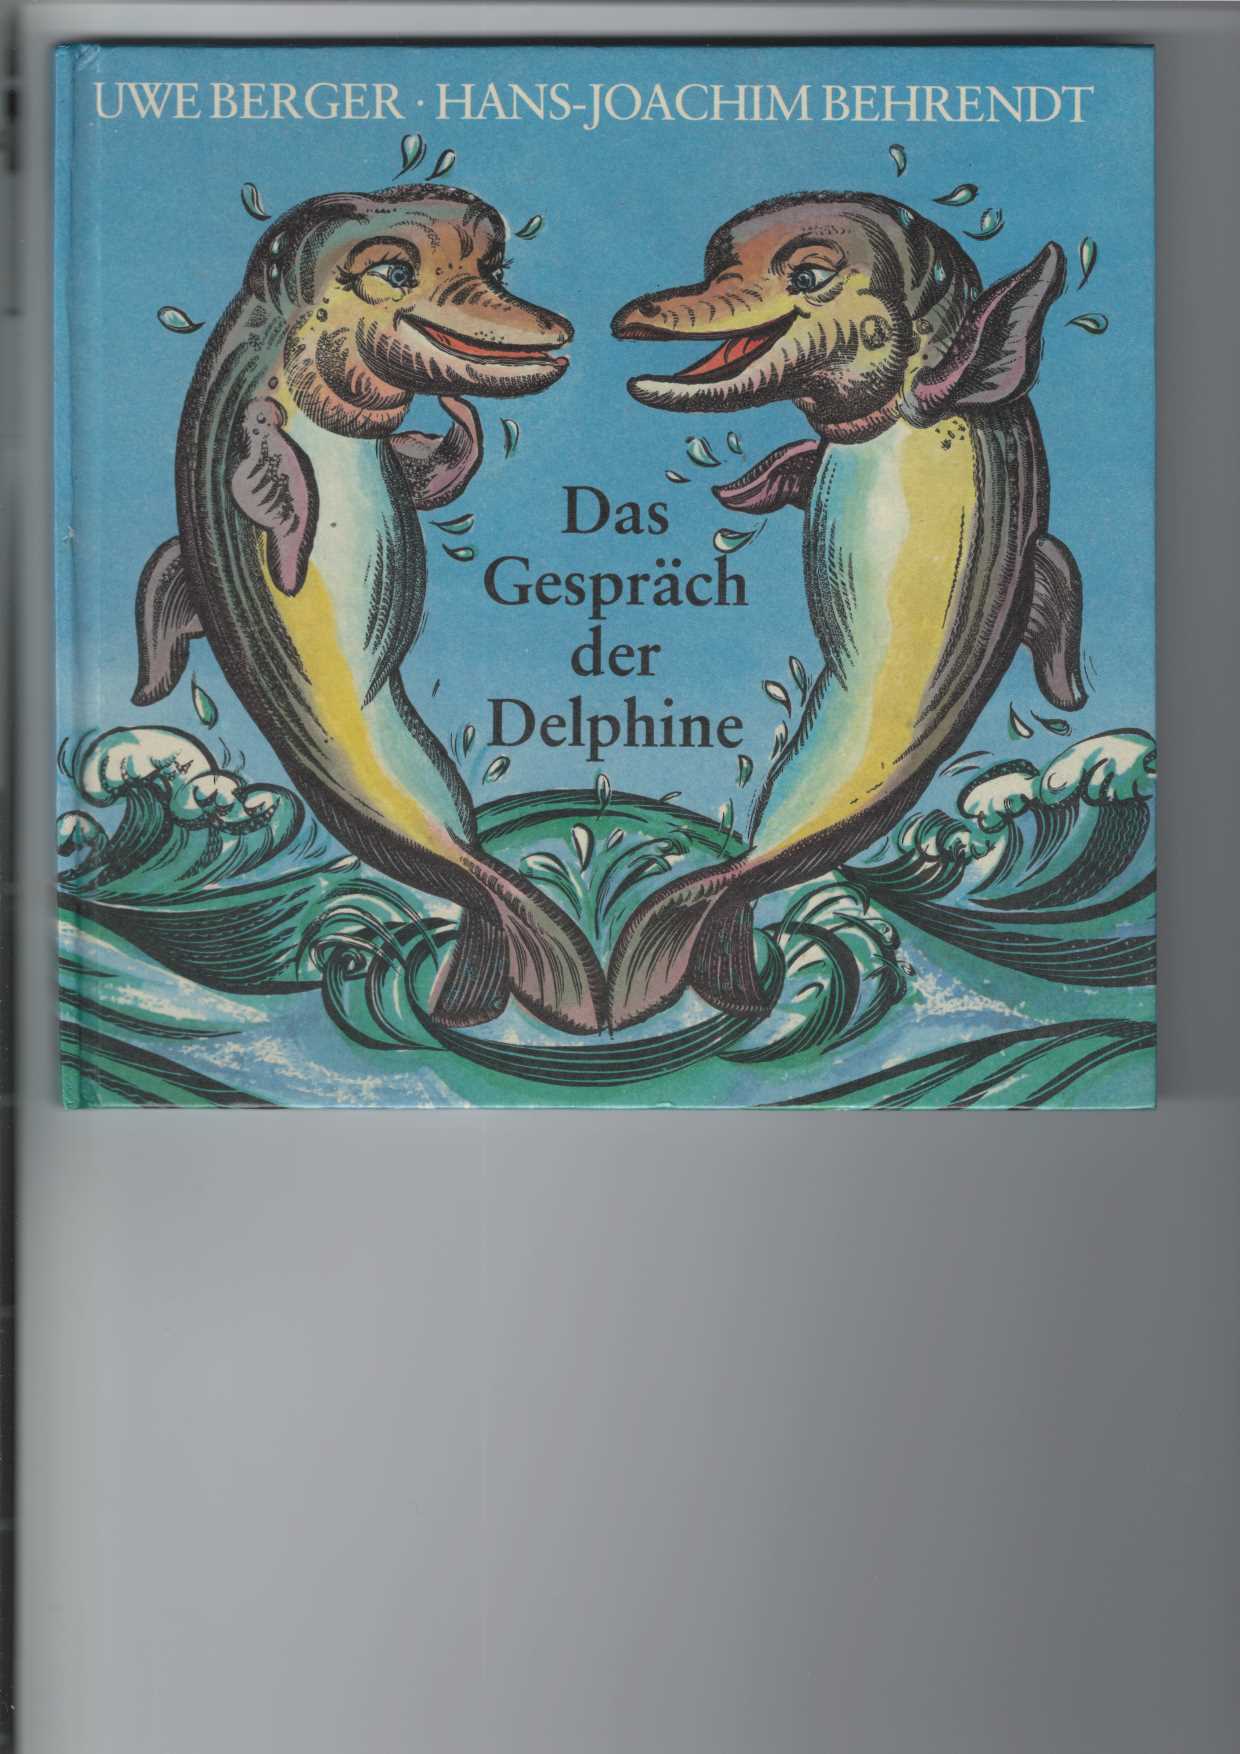 Das Gespräch der Delphine. Tierverse. Illustrationen von Hans-Joachim Behrendt. - Berger, Uwe und Hans-Joachim Behrendt